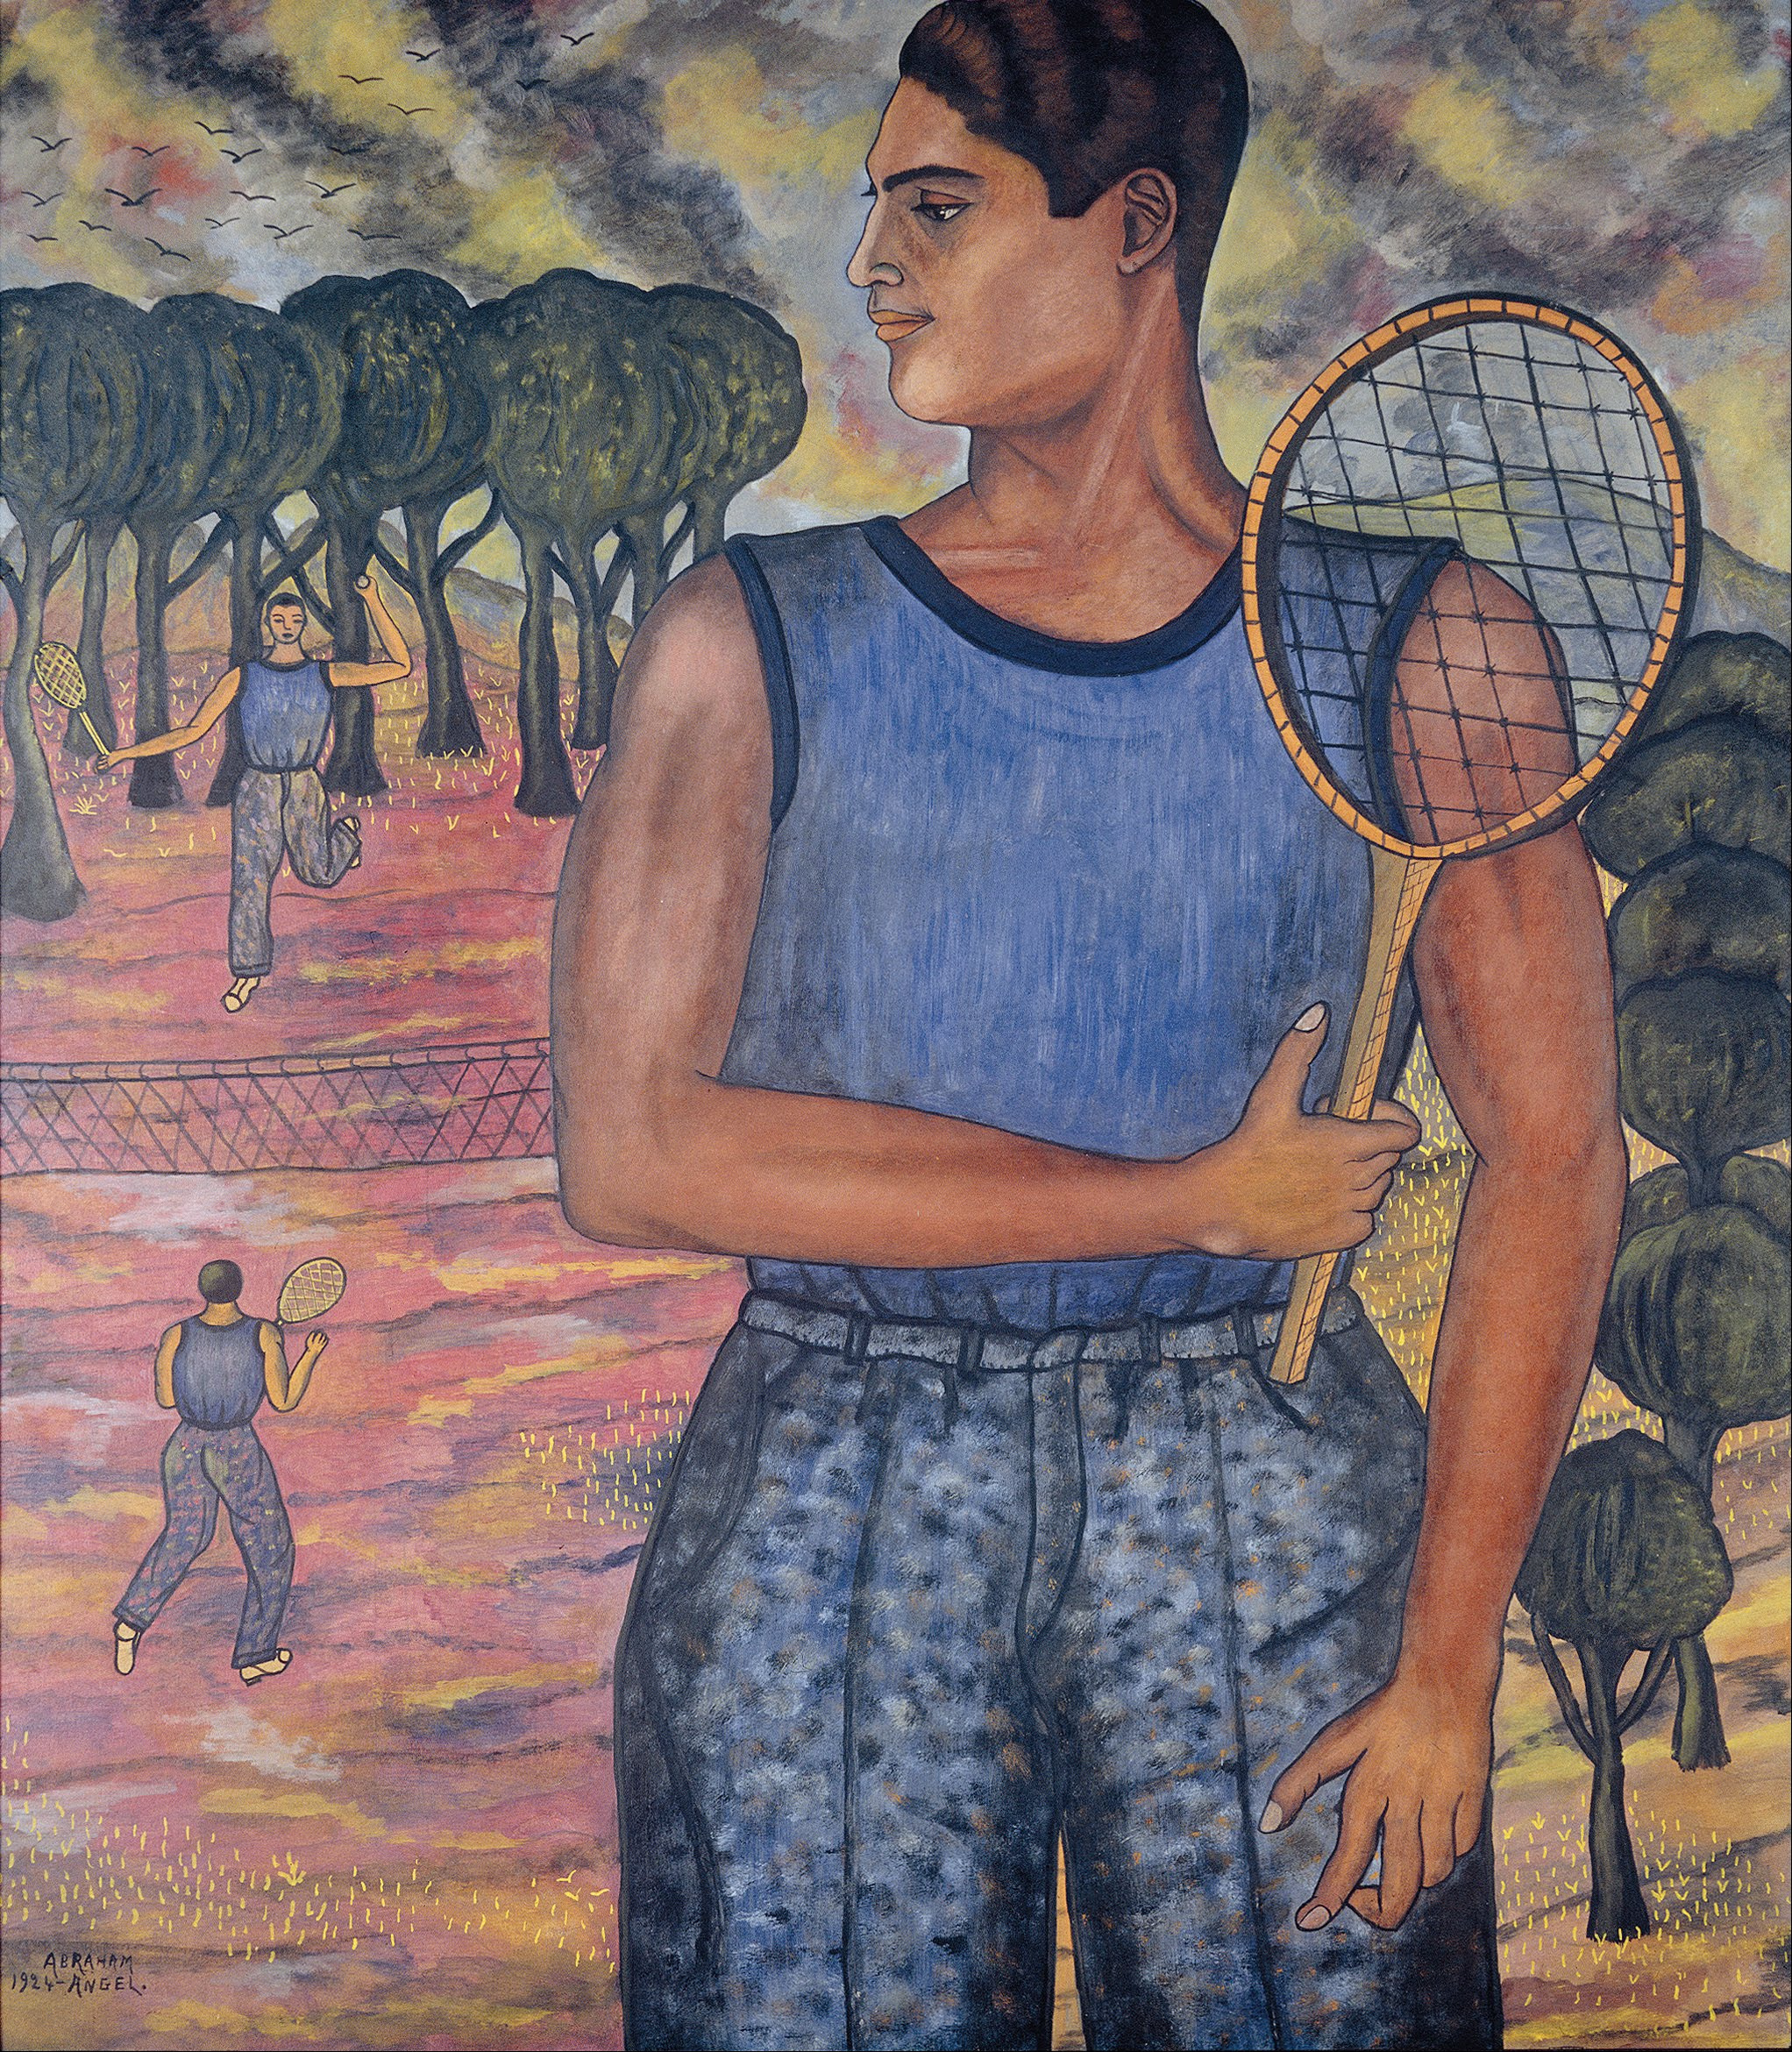 雨果·蒂尔曼的肖像 by 亚伯拉罕 安赫尔 - 1924 - 13.6 × 12 cm 国家艺术博物馆